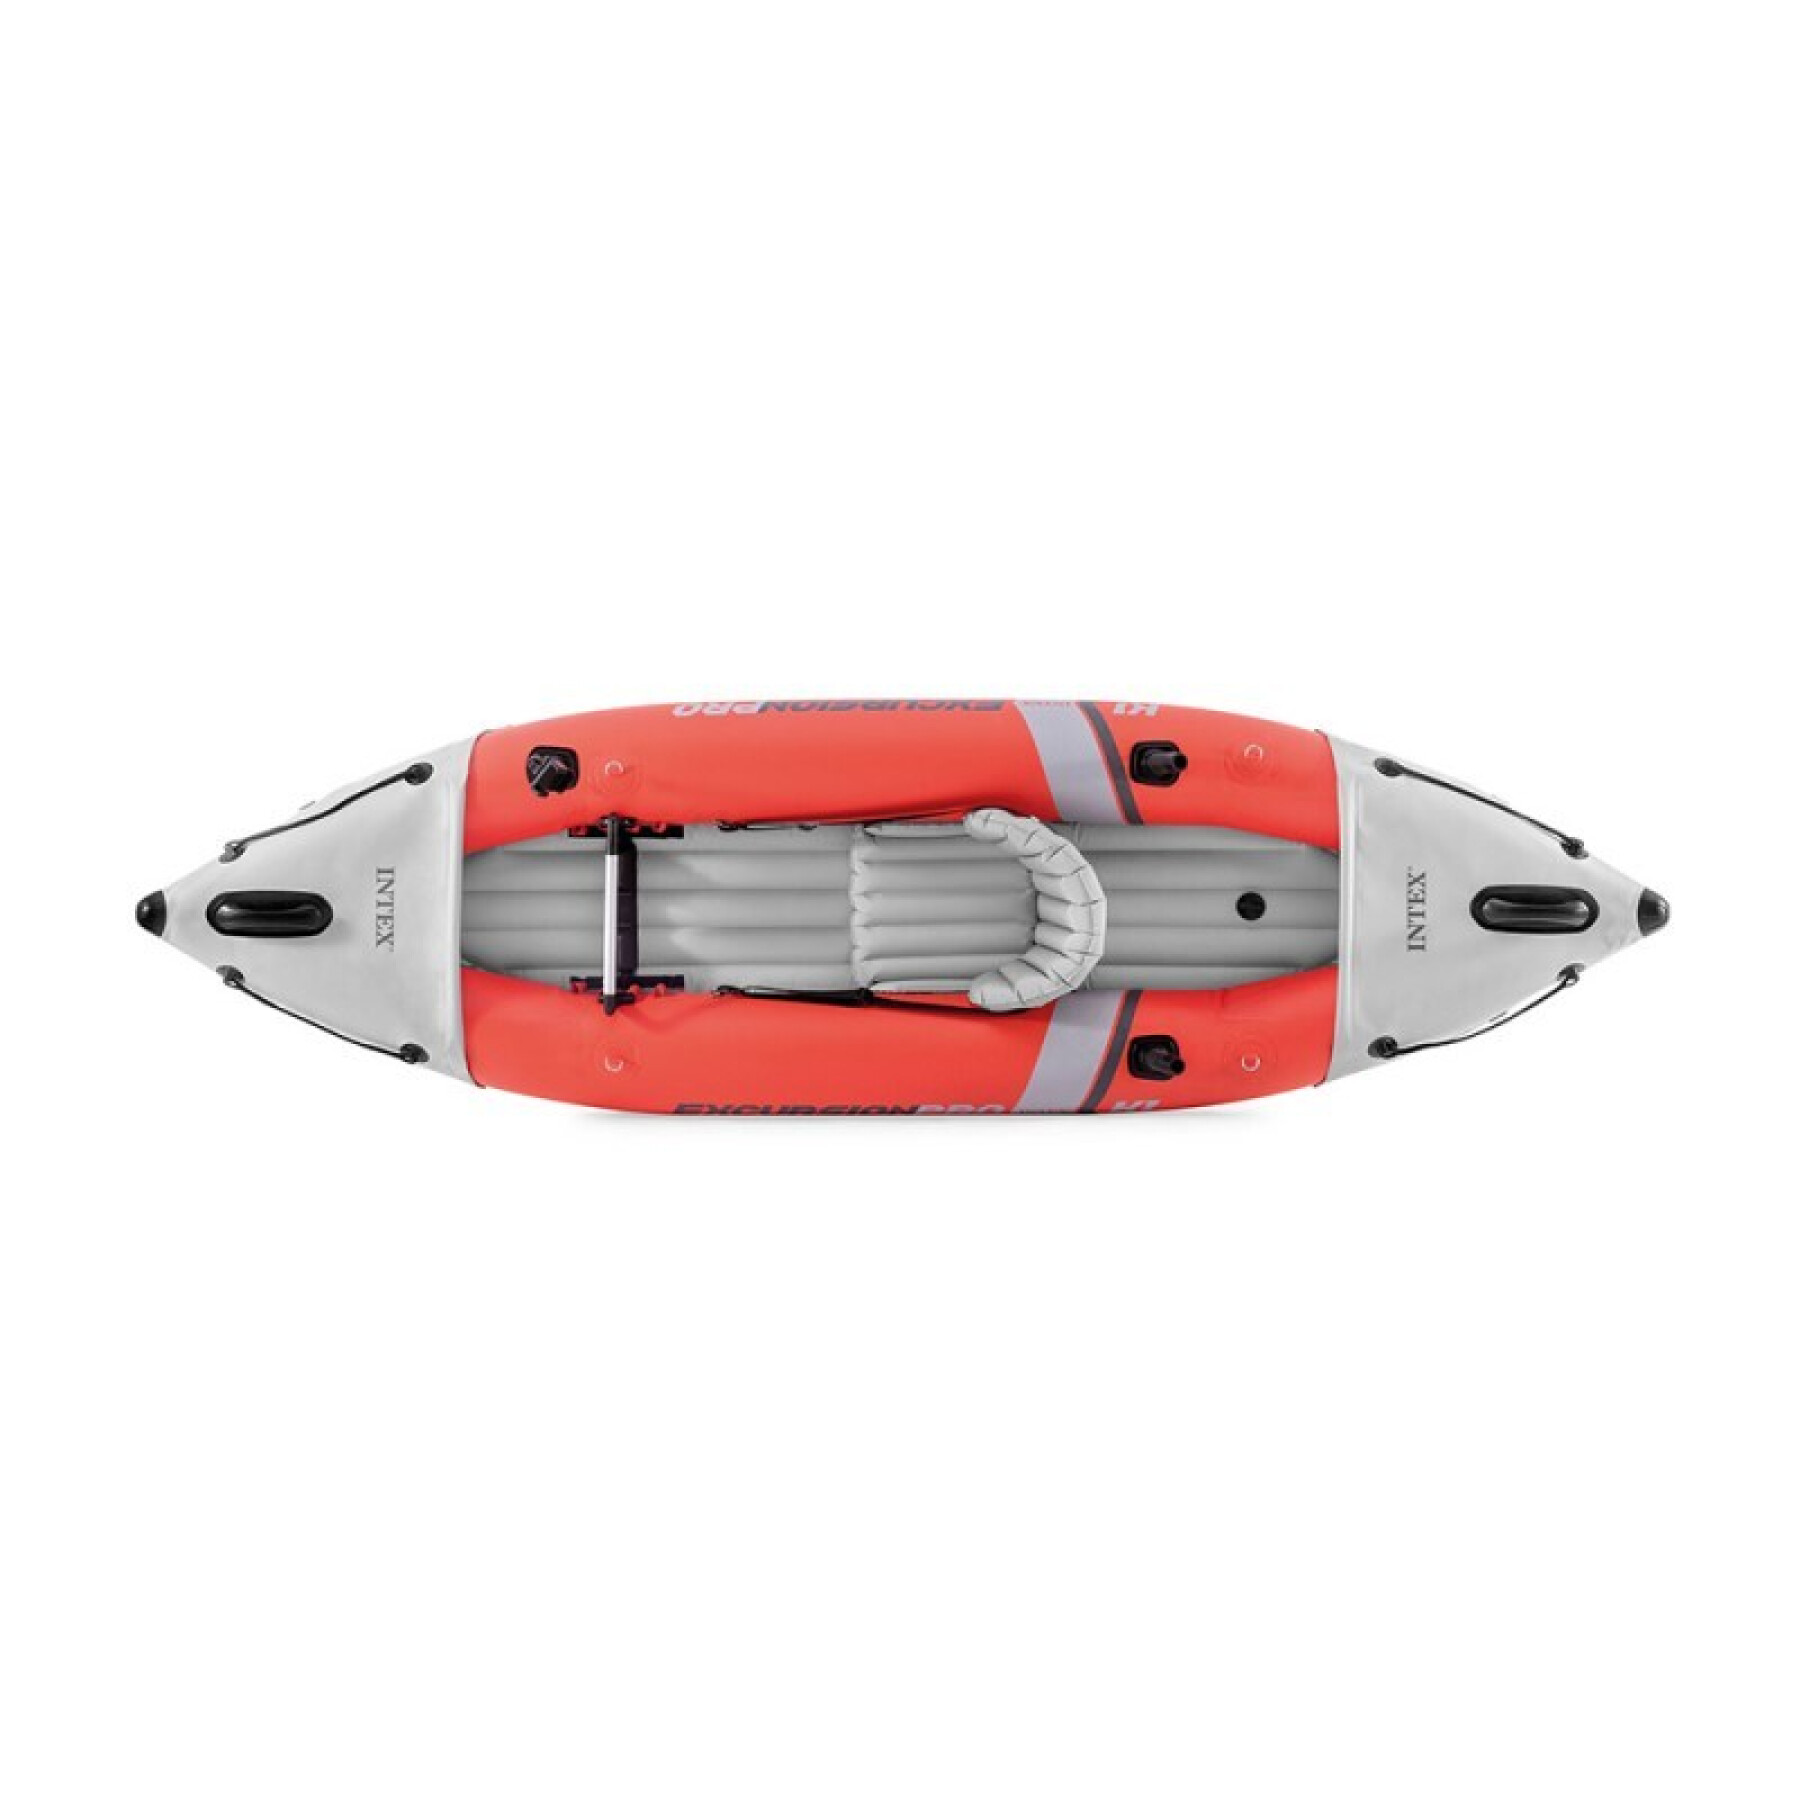 Inflatable kayak Intex Excursion Pro K1